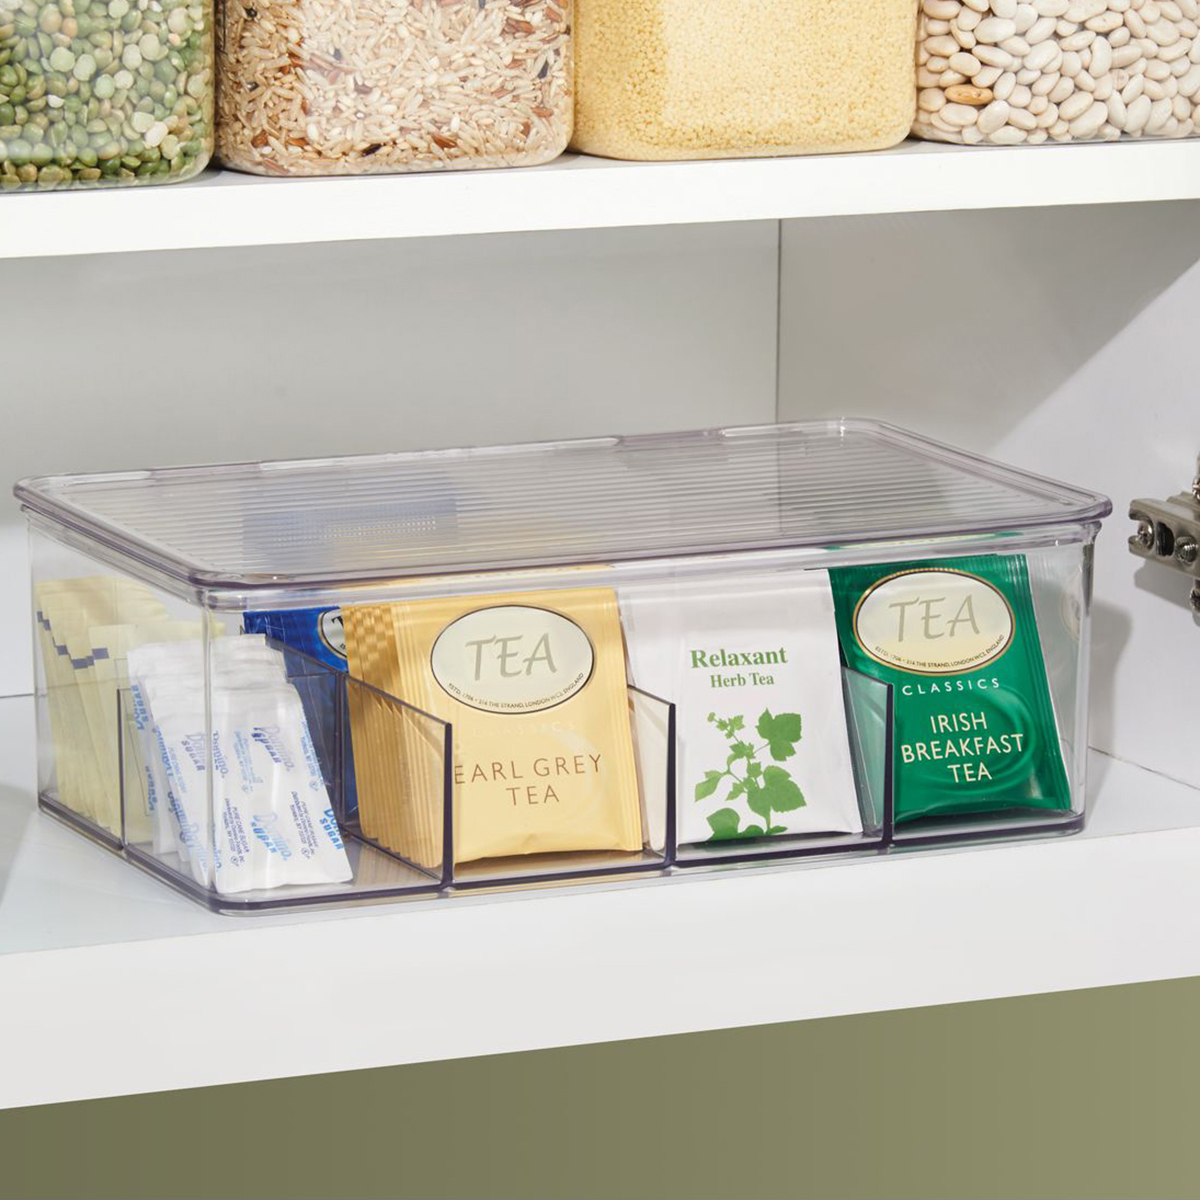 Clear Storage Bag Organizer Box. Organize Food & Storage Bags